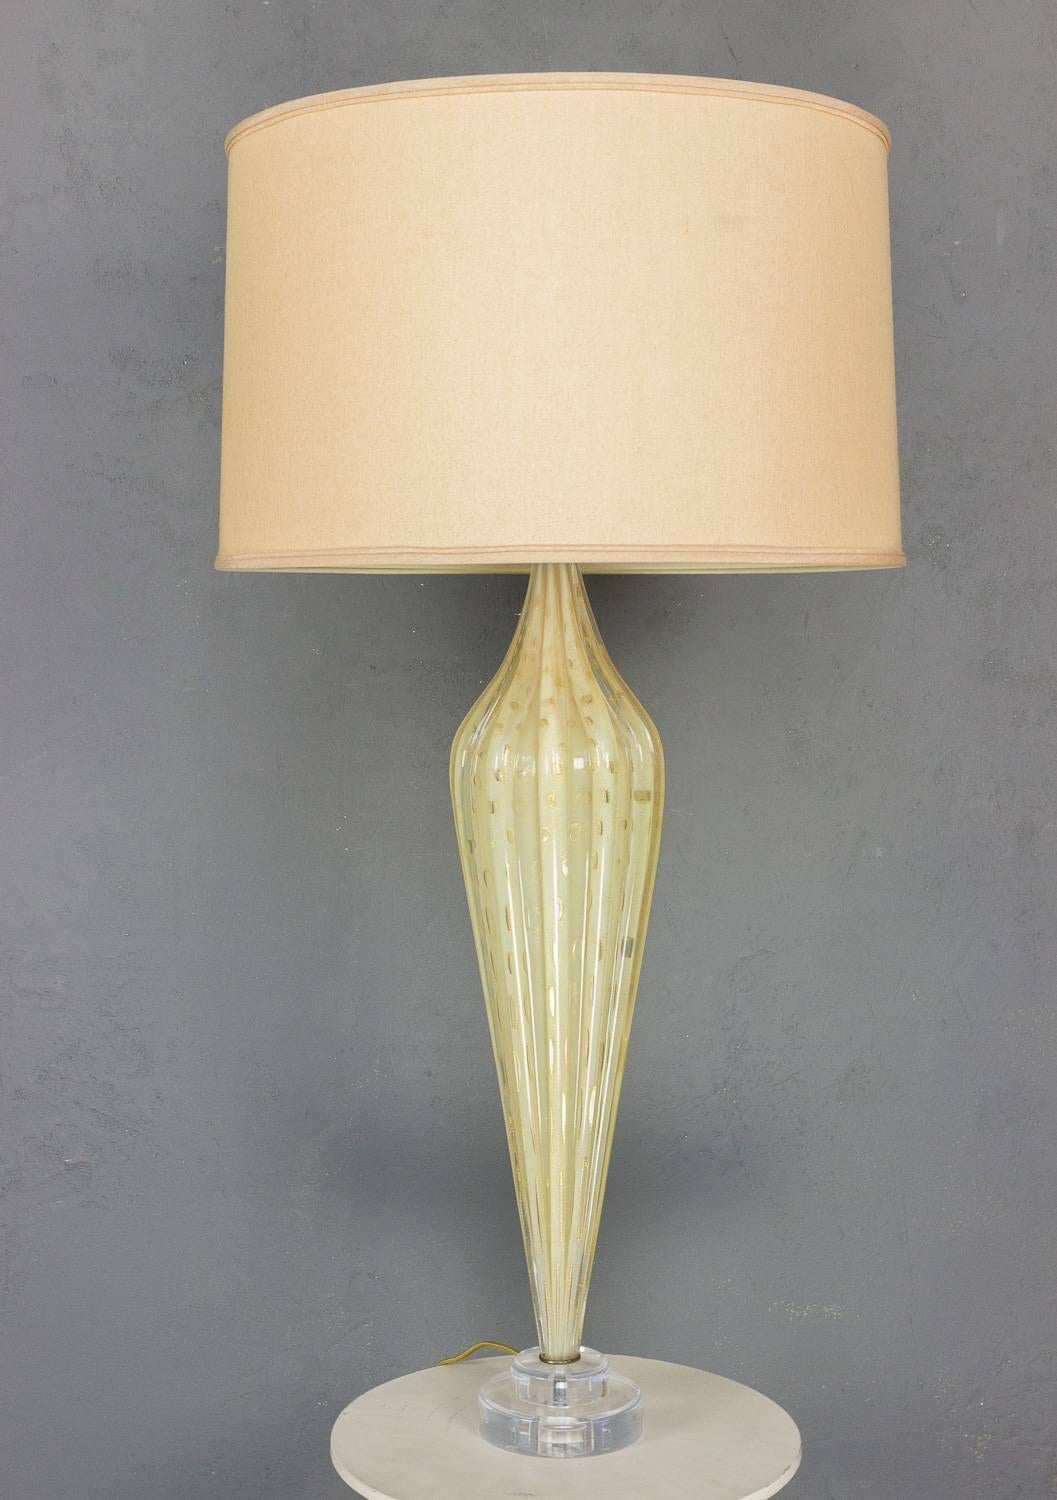 Il s'agit d'une rare et étonnante lampe de Murano soufflée à la main dans les années 1940, fabriquée par d'habiles artisans en Italie. La lampe présente un verre strié d'une belle teinte jaune d'or avec des inclusions dorées complexes qui ajoutent